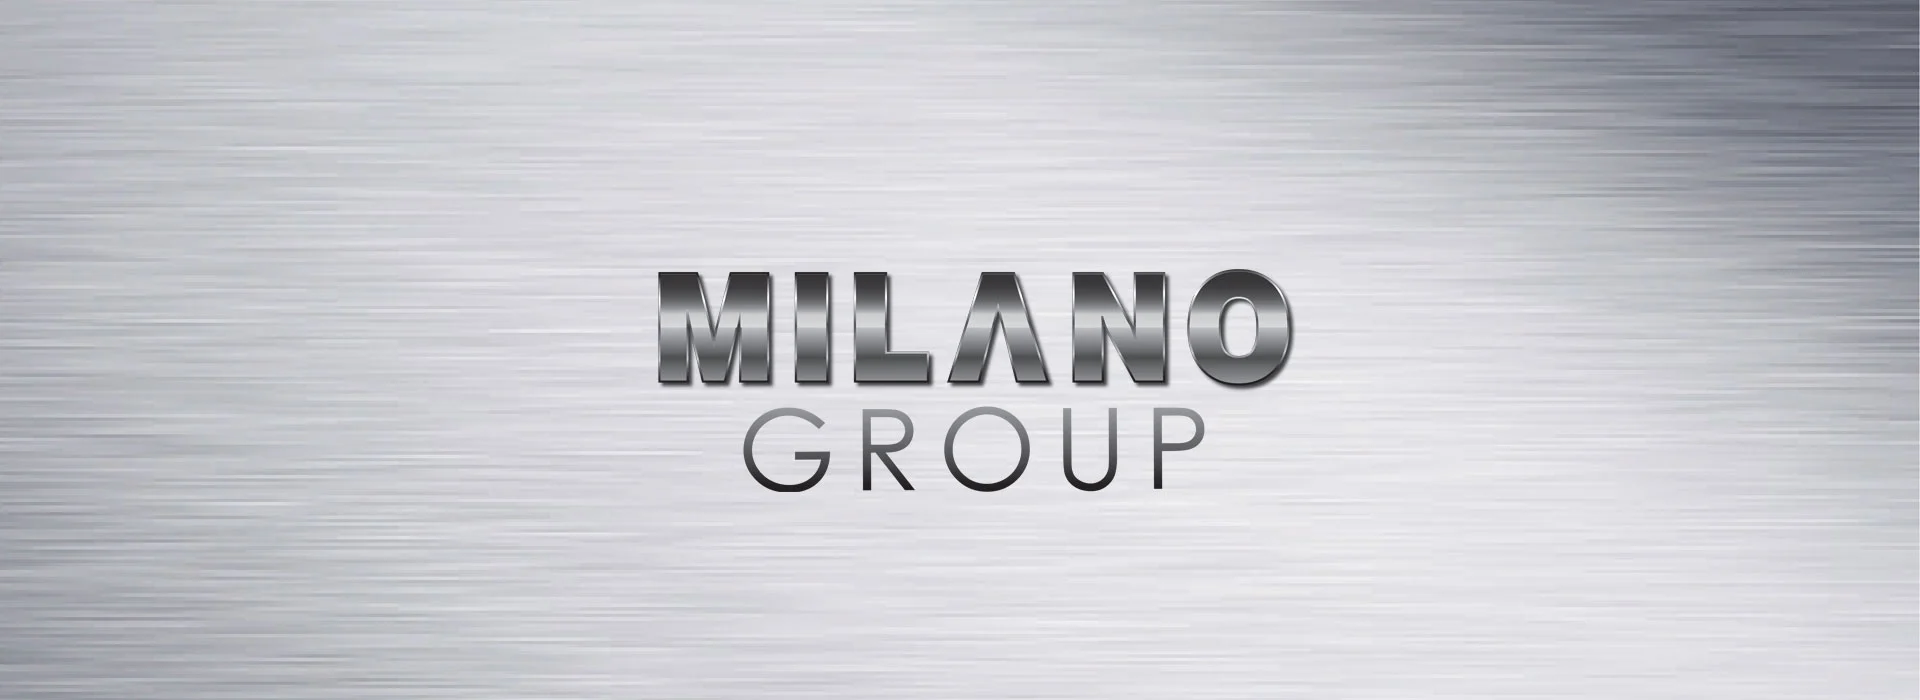 milano group main banner